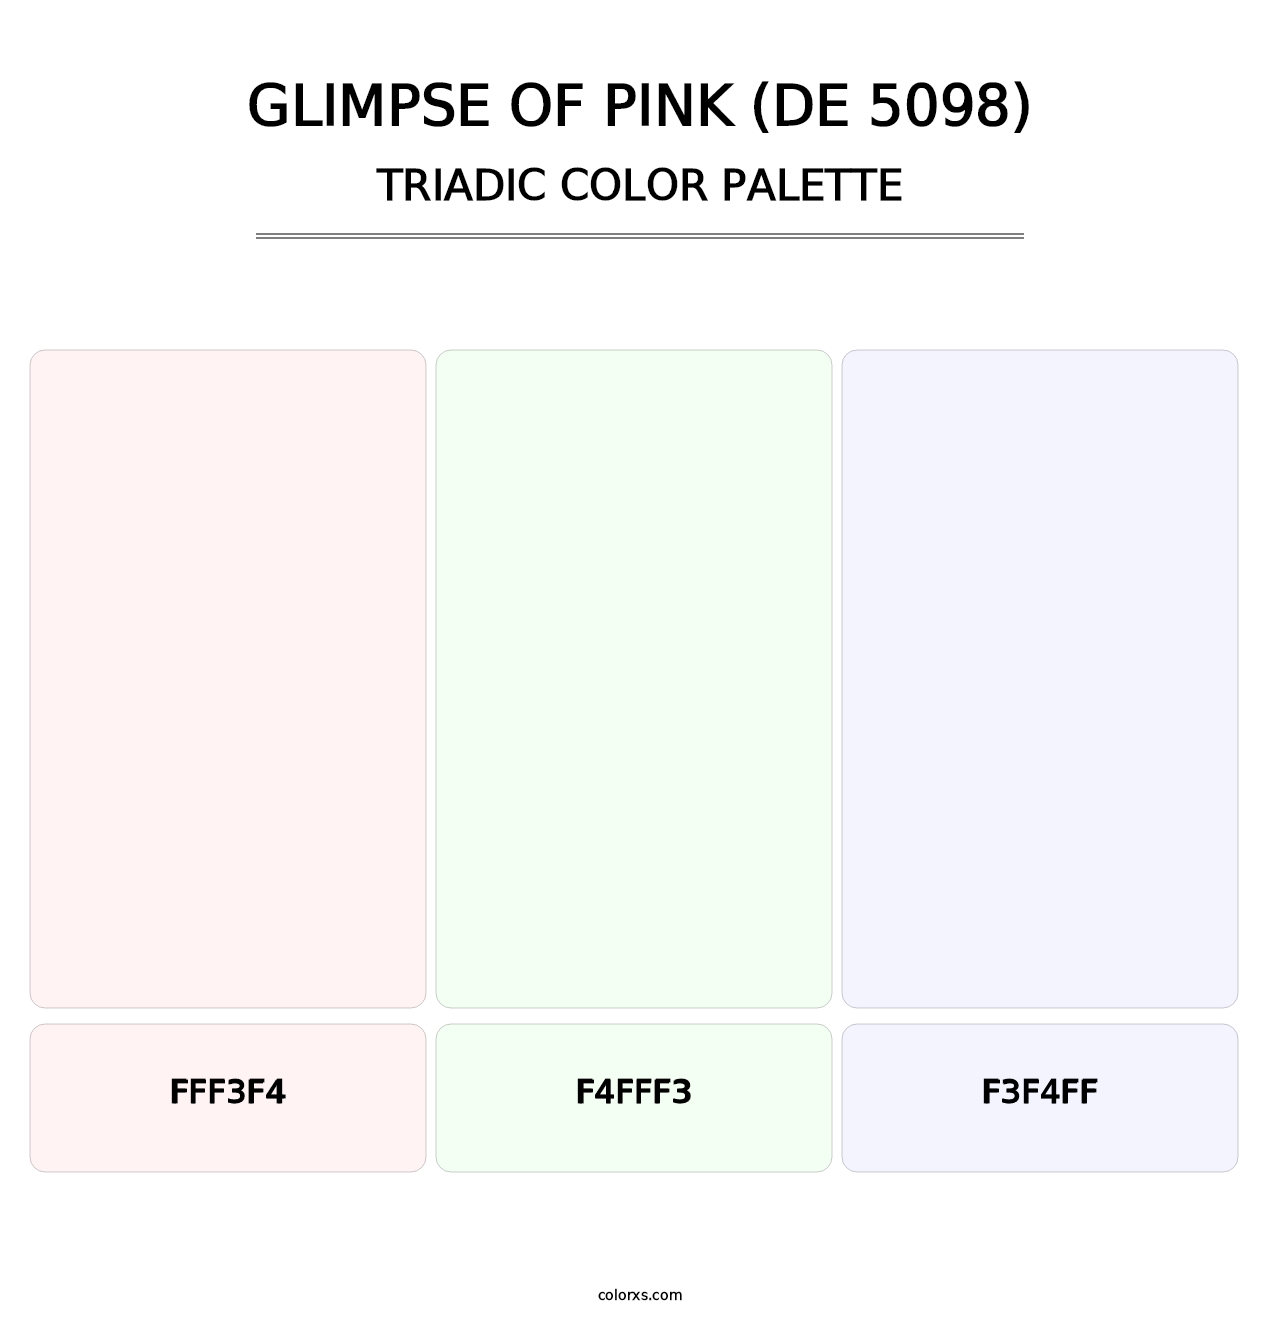 Glimpse of Pink (DE 5098) - Triadic Color Palette